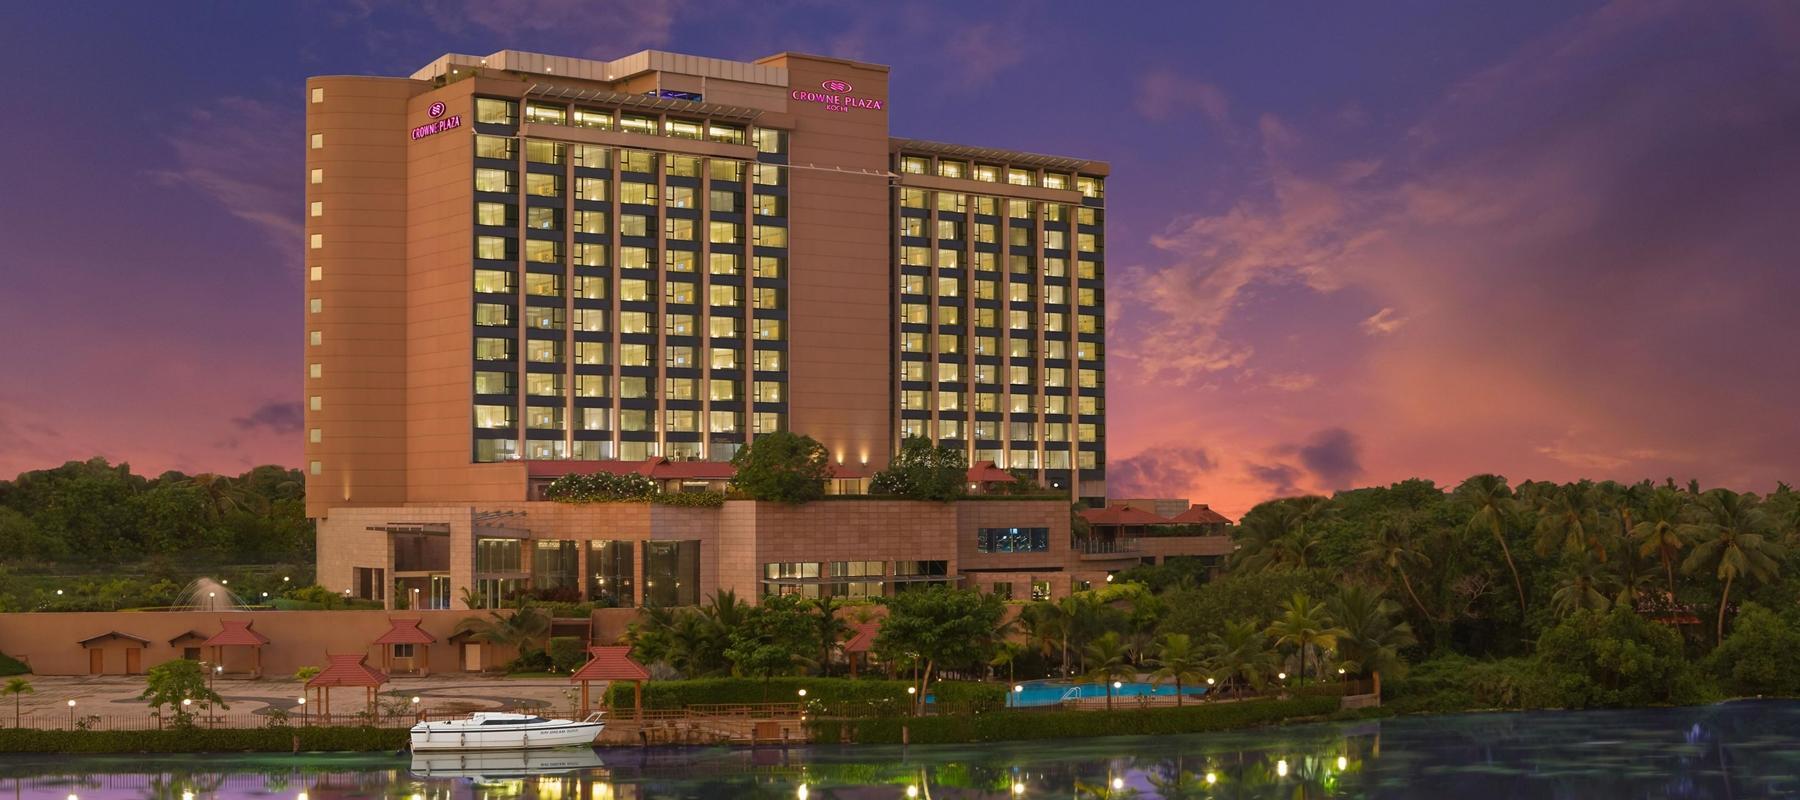 Star Hotels in Kerala